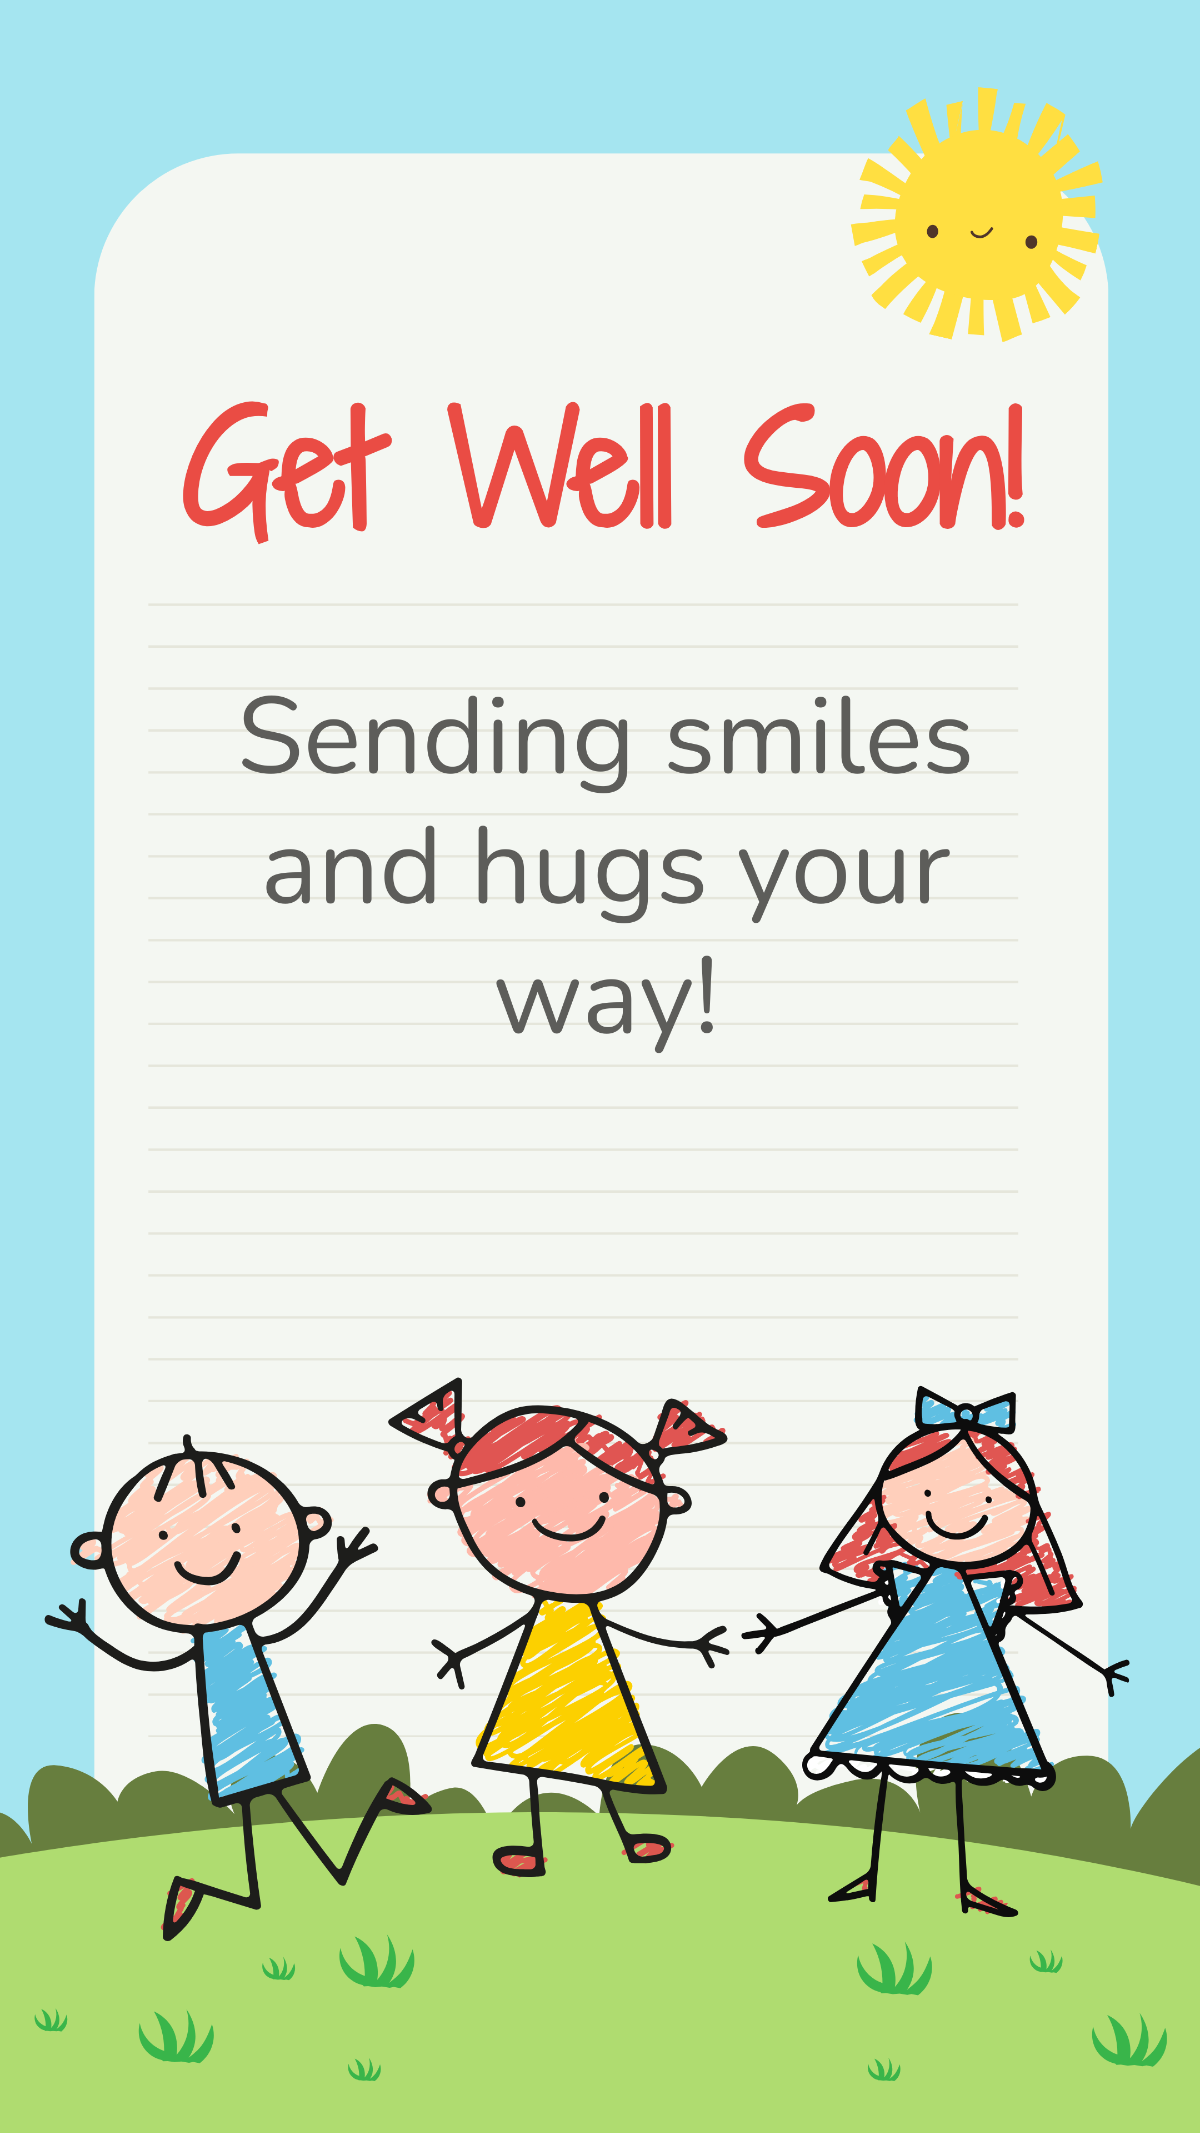 Get Well Soon Children's Card Template